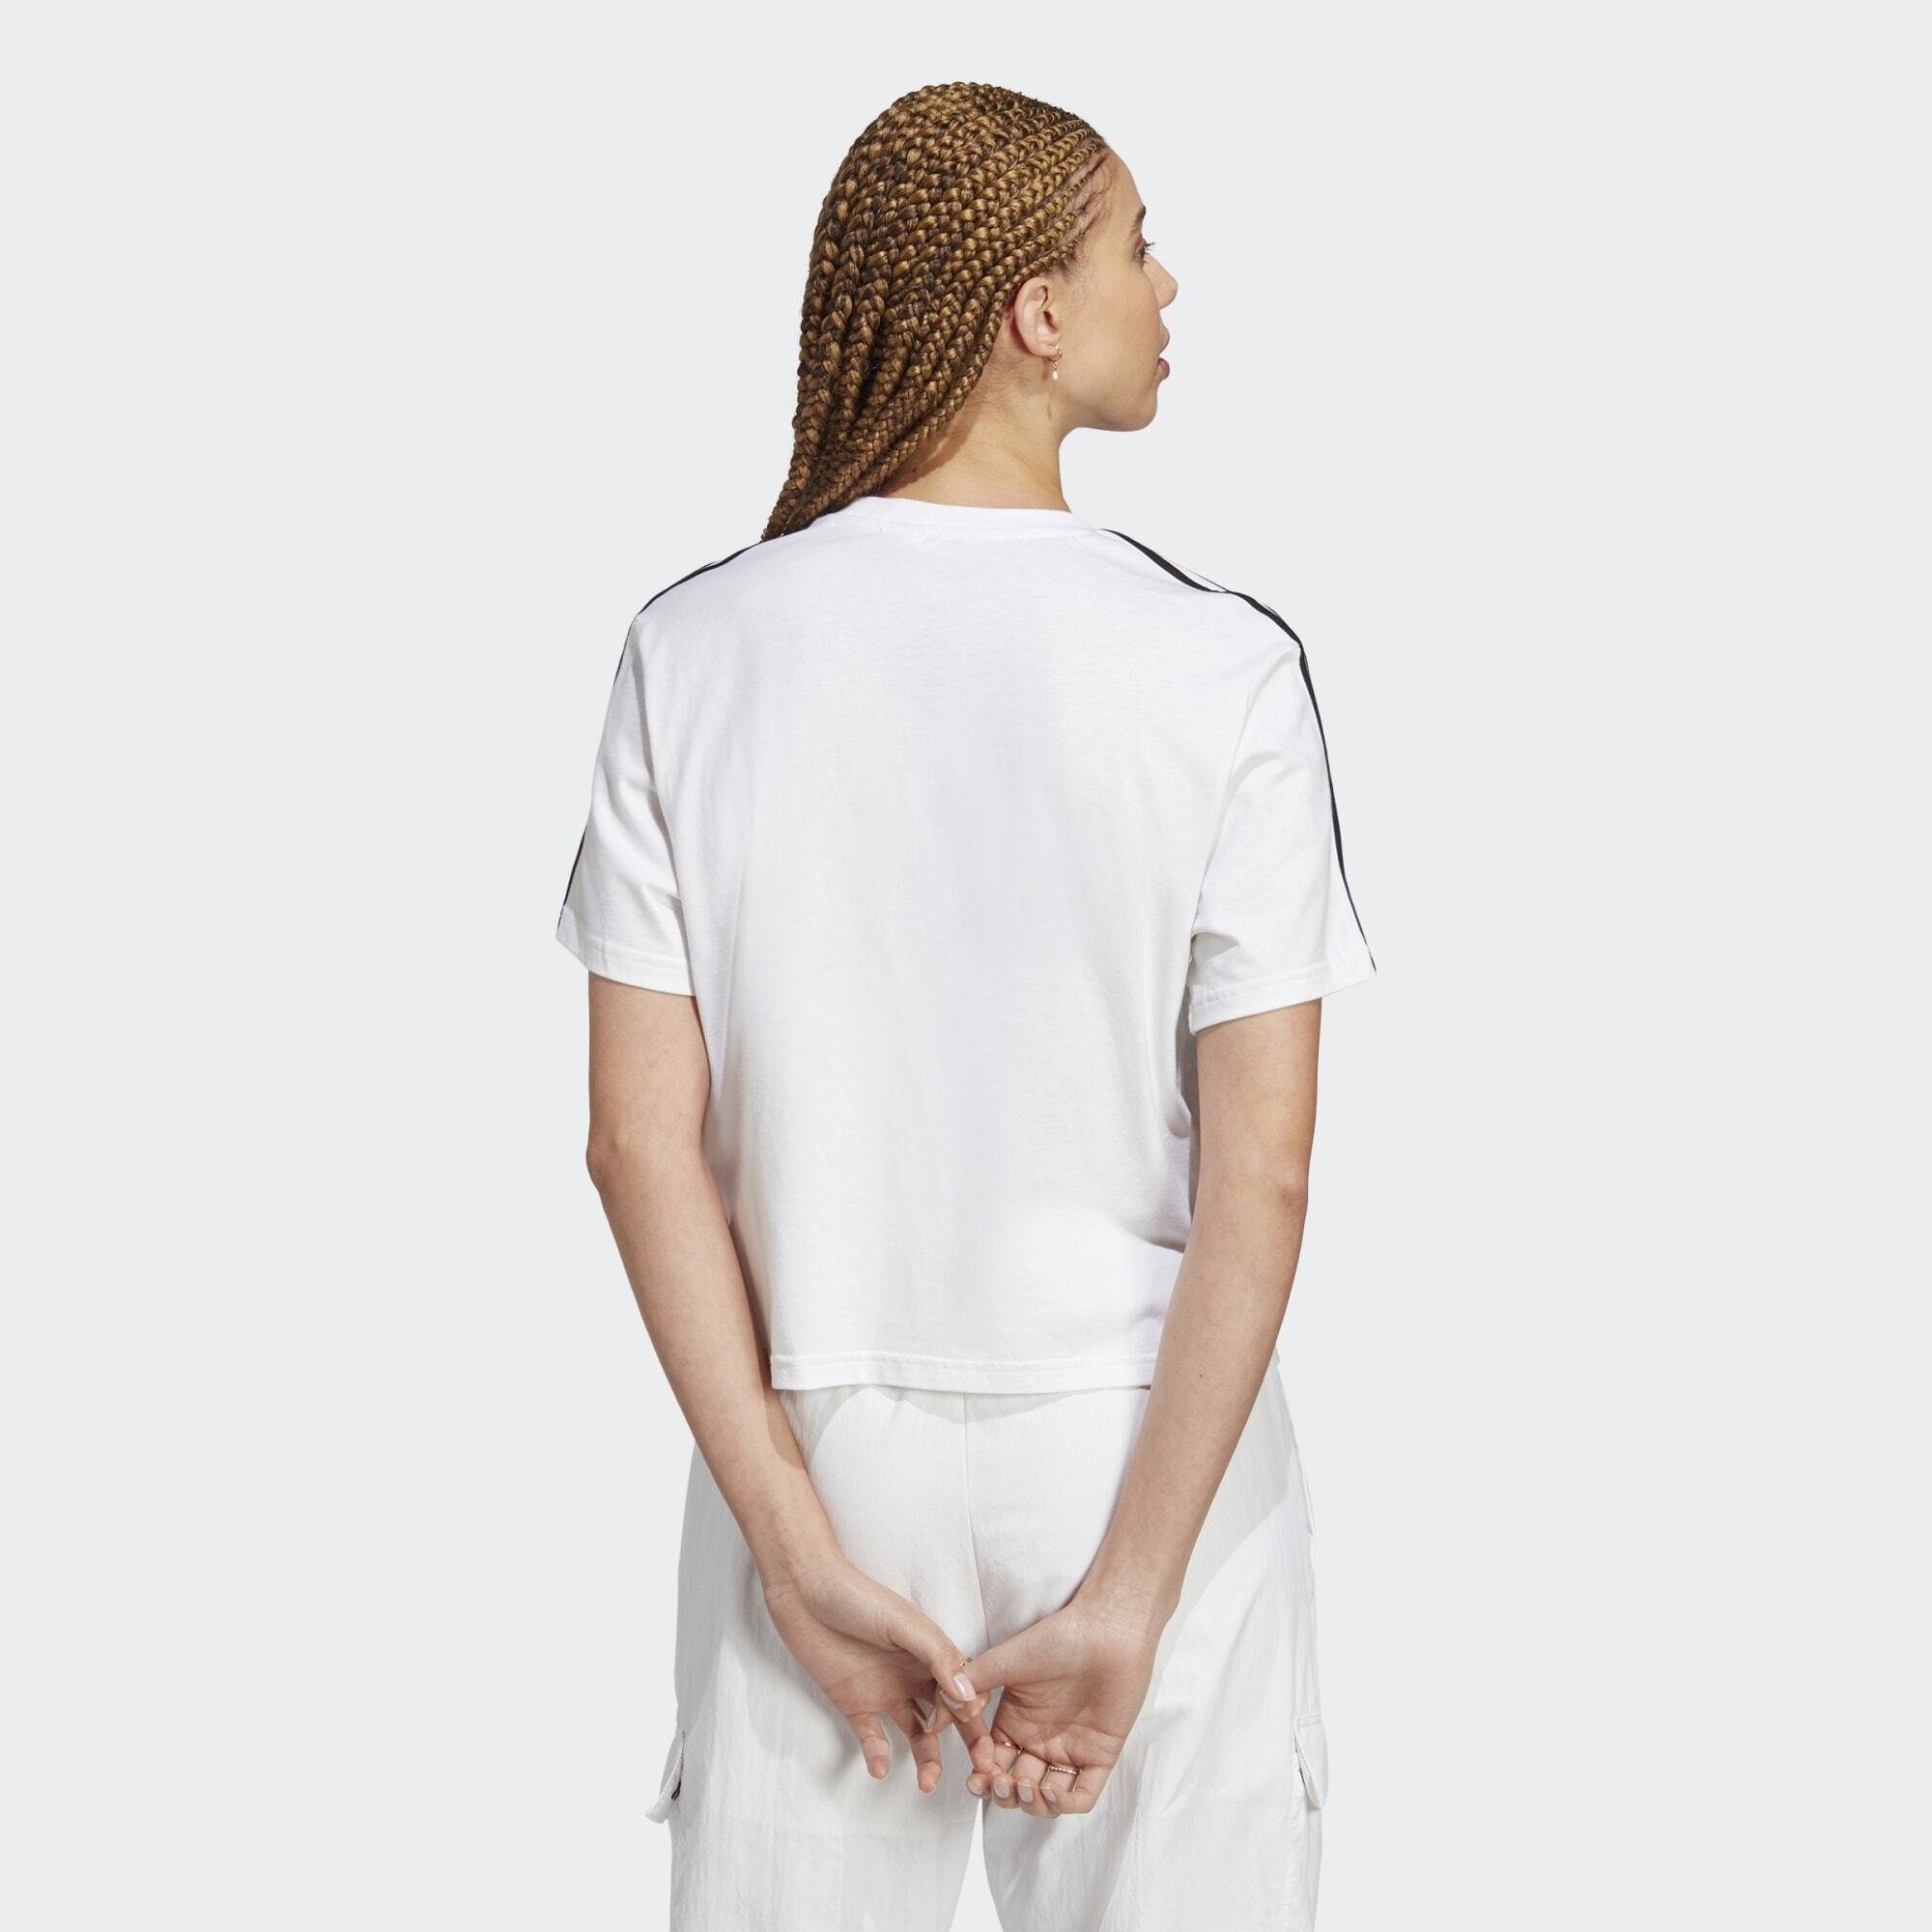 adidas Sportswear T-Shirt SINGLE Black JERSEY ESSENTIALS 3-STREIFEN / CROP-TOP White